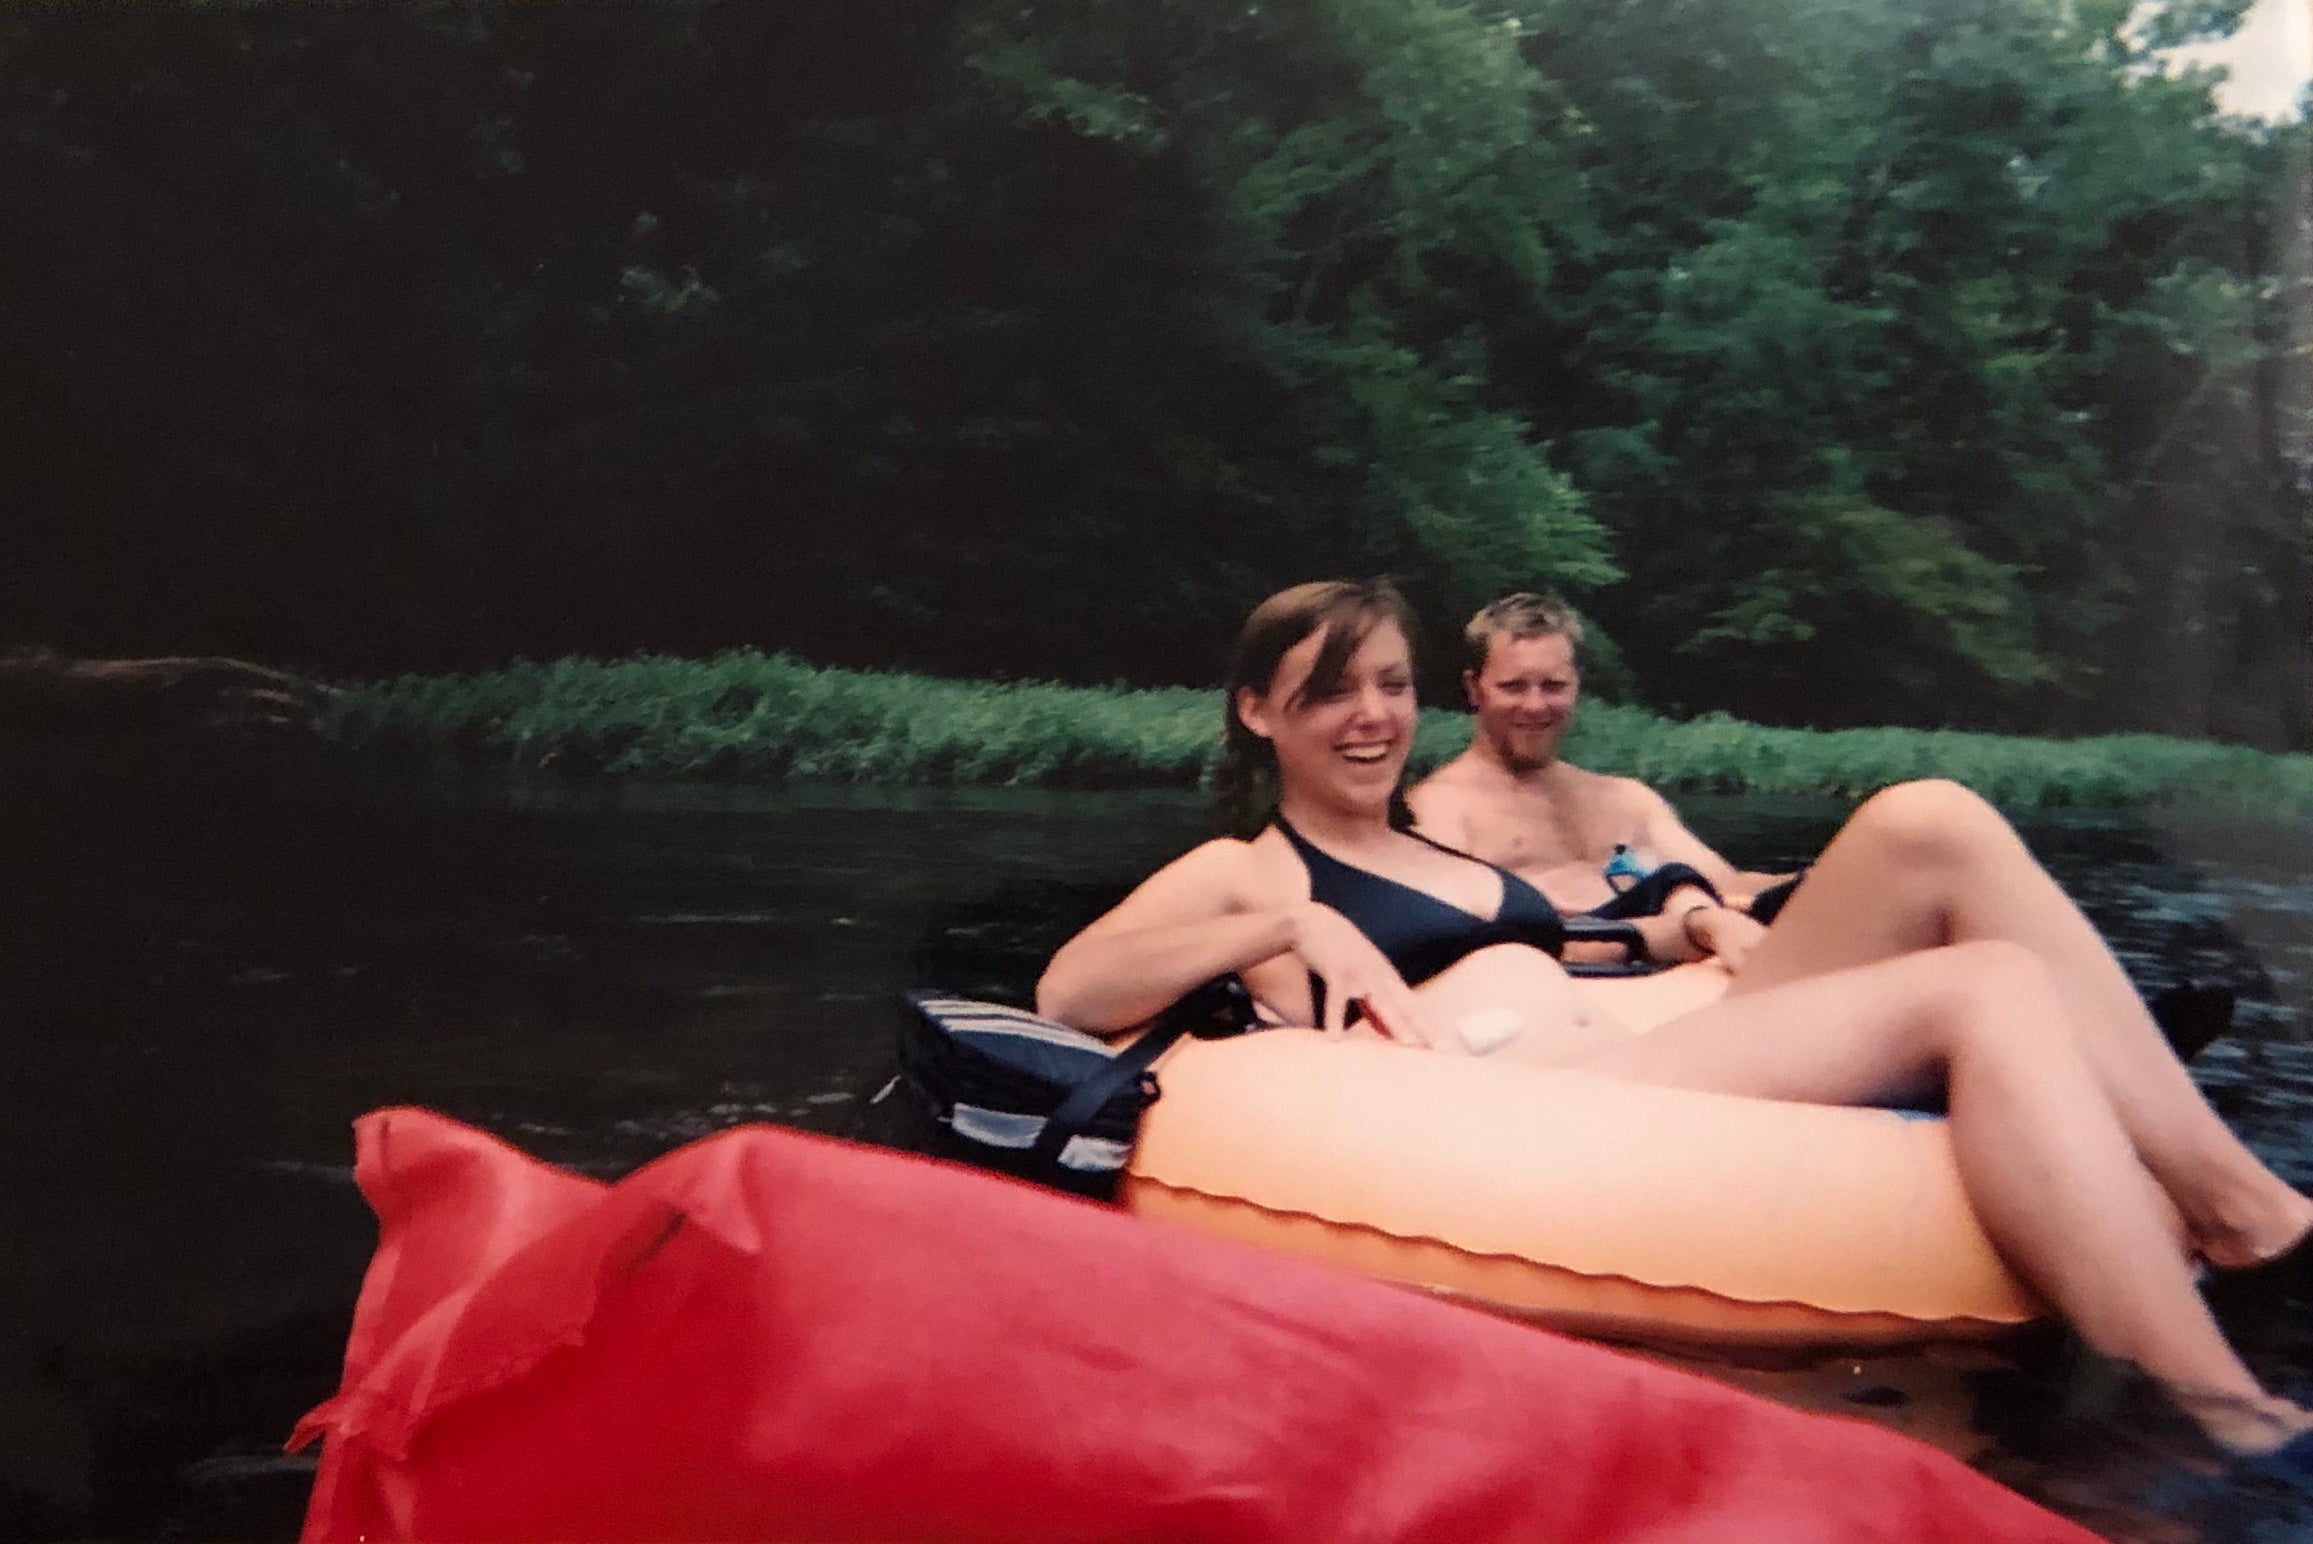 Fun tubing on the Rappahannock River!